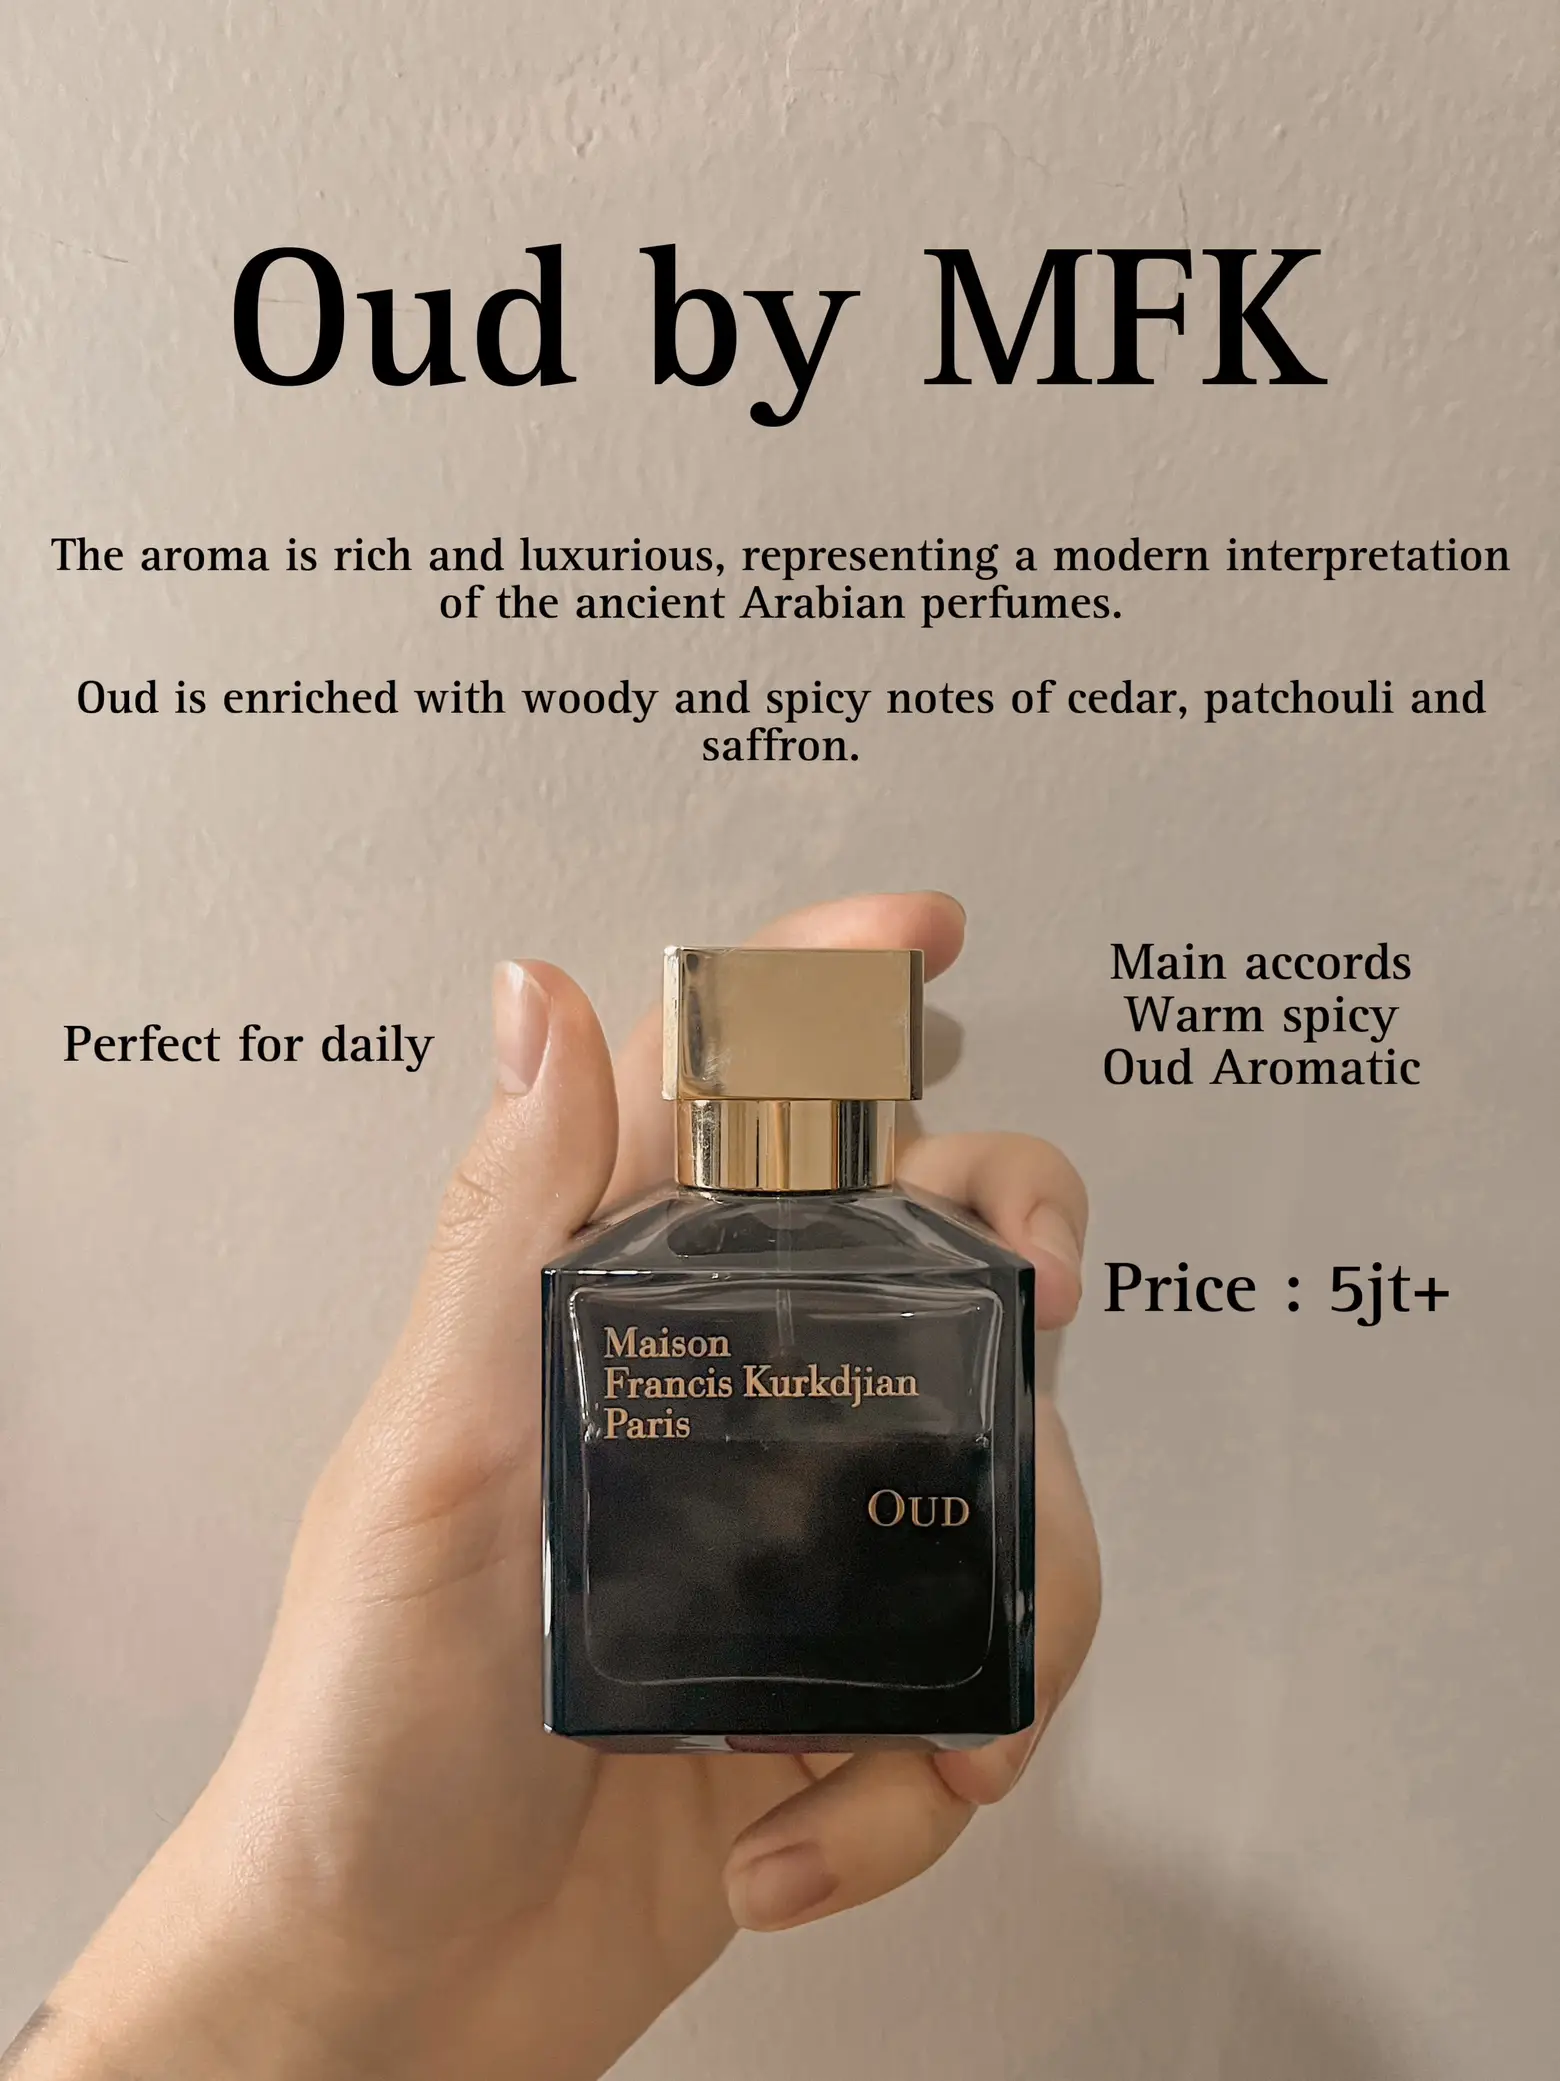 Hypeabis - 10 Rekomendasi Parfum Terbaik untuk Pria